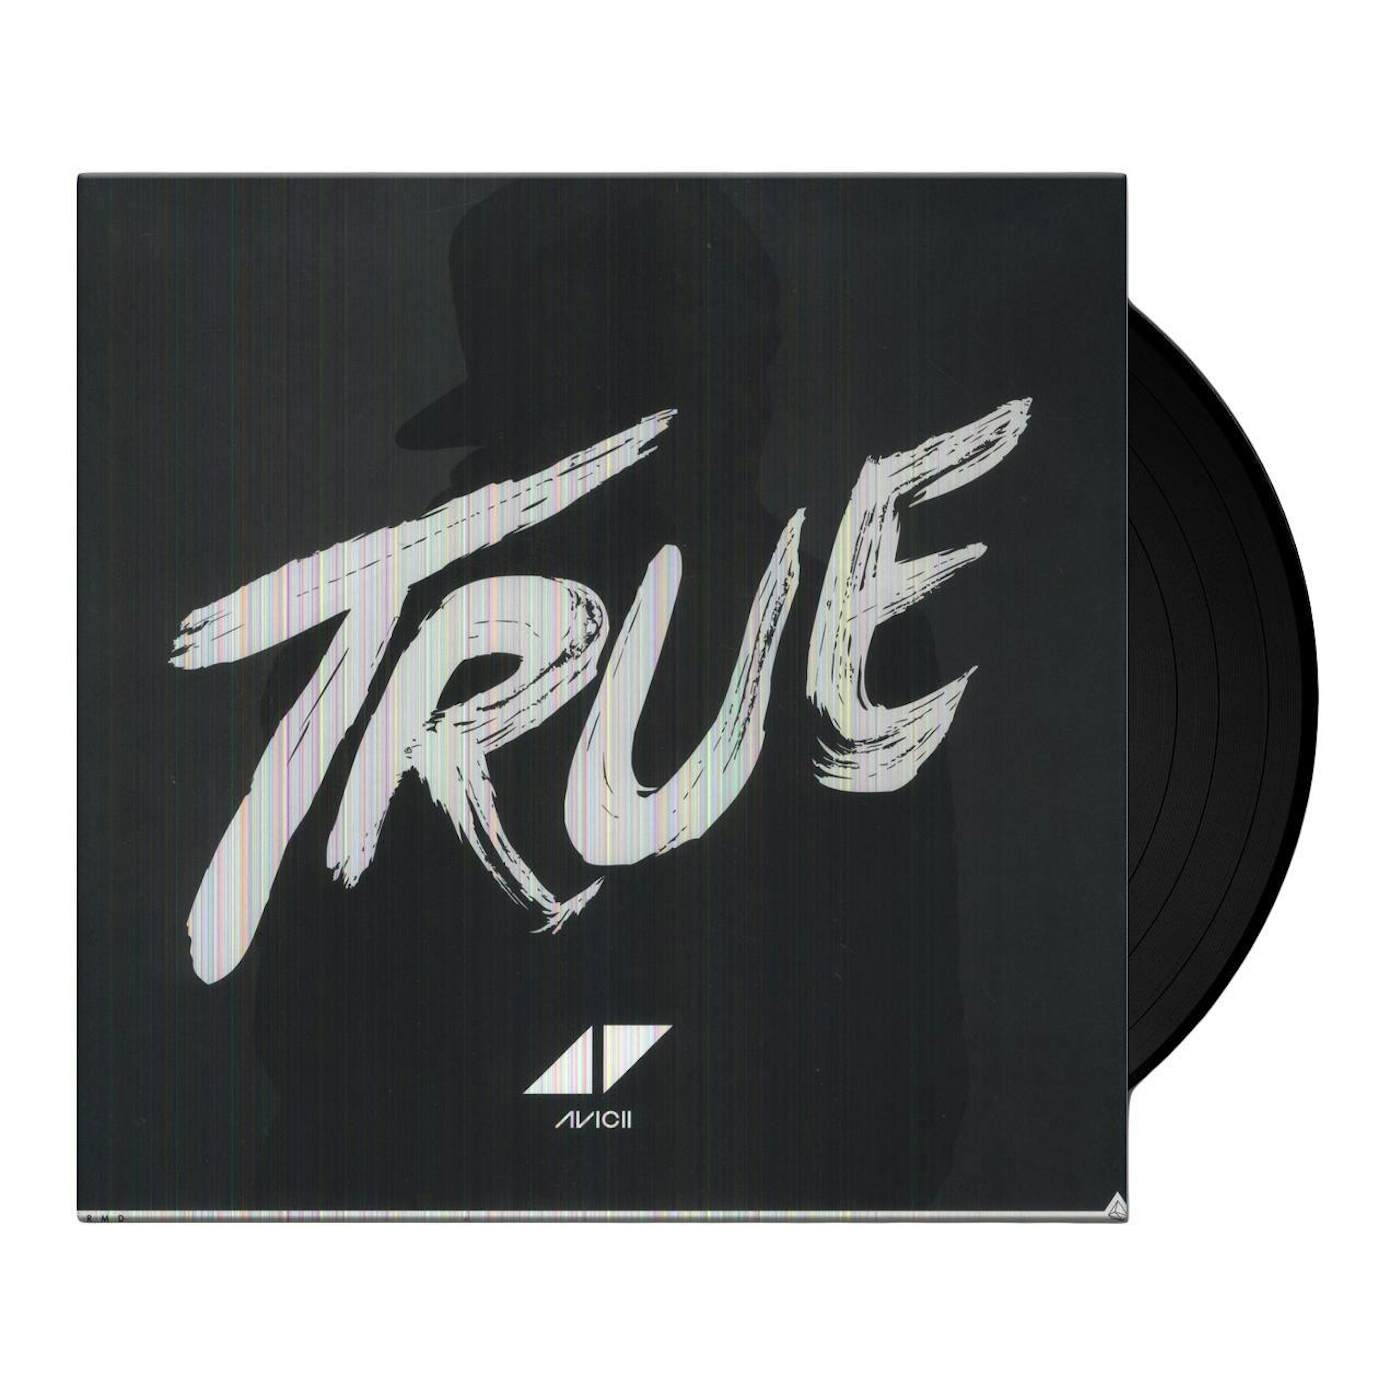 Avicii True Vinyl Record